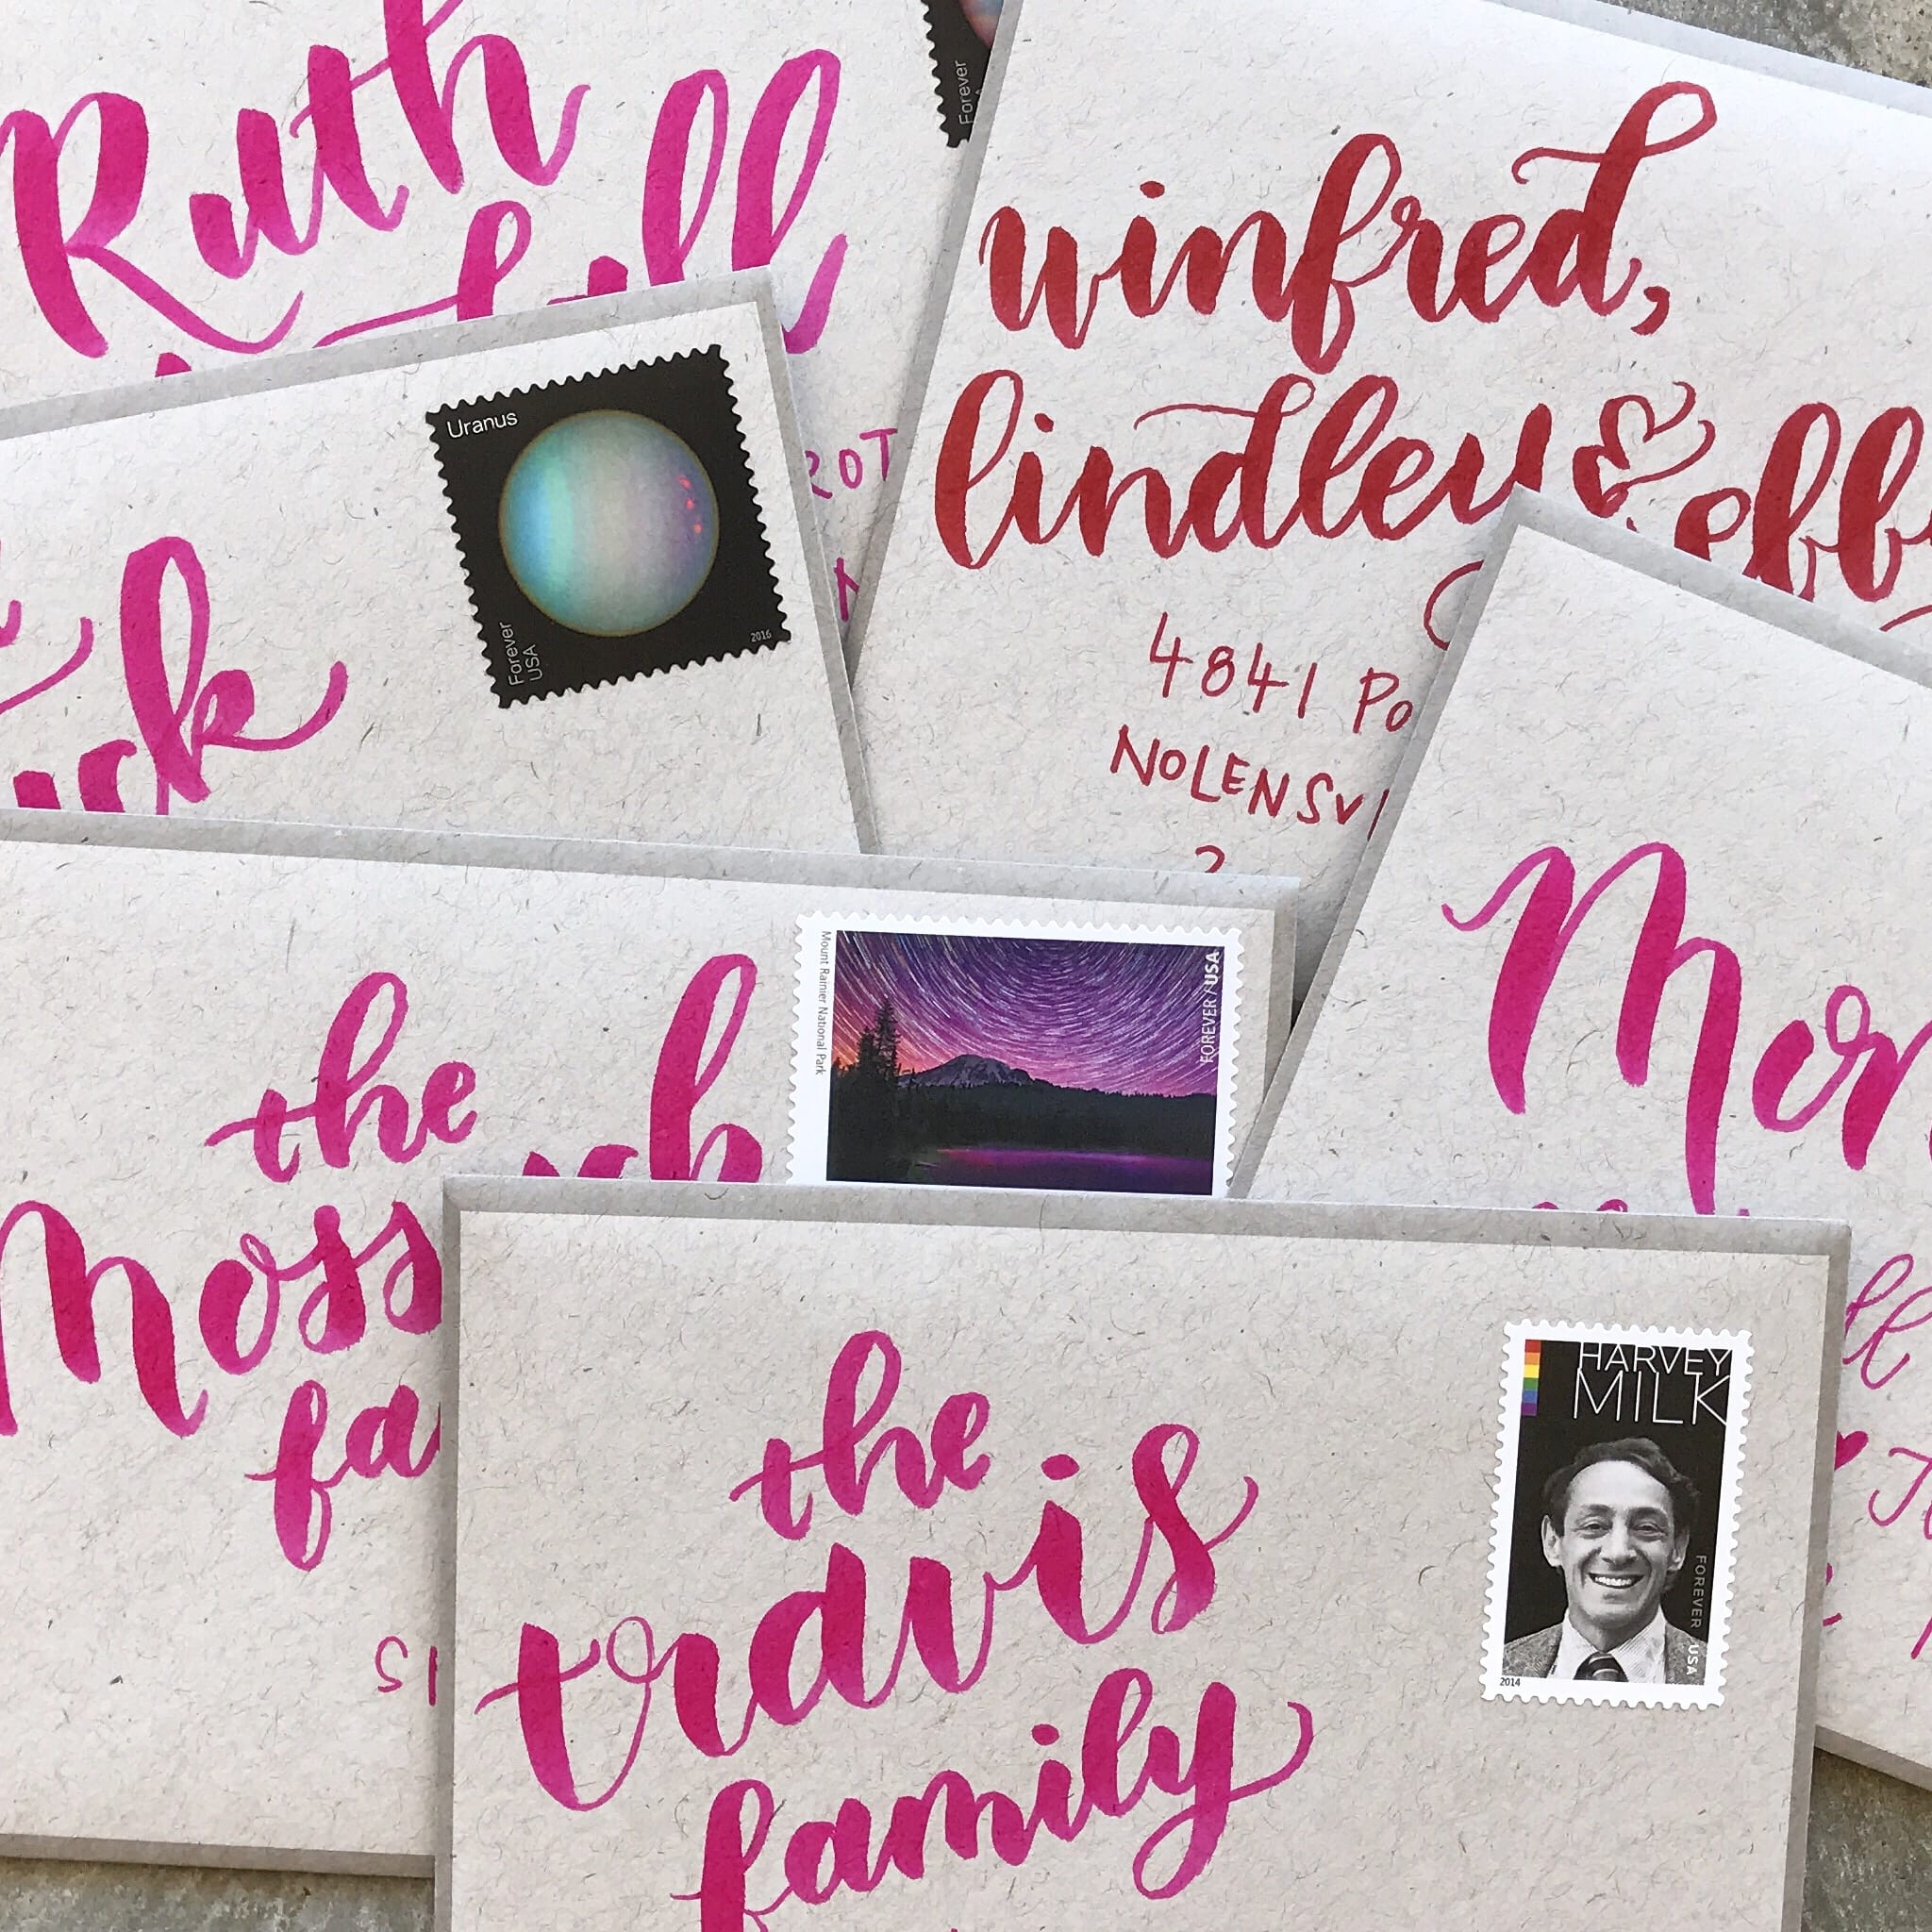 Hot pink brushed lettering on envelopes in a pile.